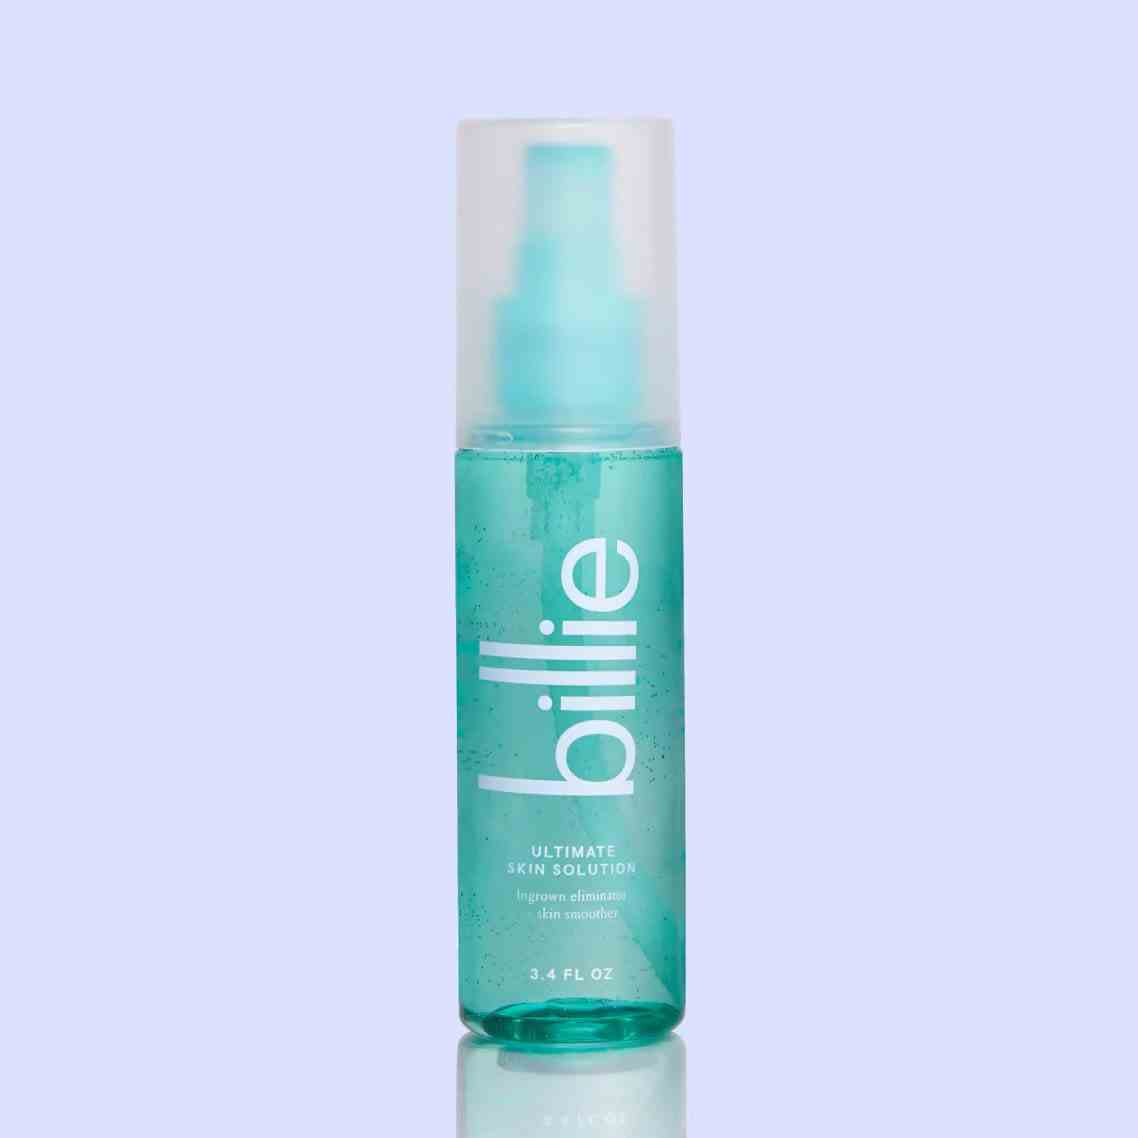 Blaugrüne Flasche Billie Ultimate Skin Solution auf violettem Hintergrund